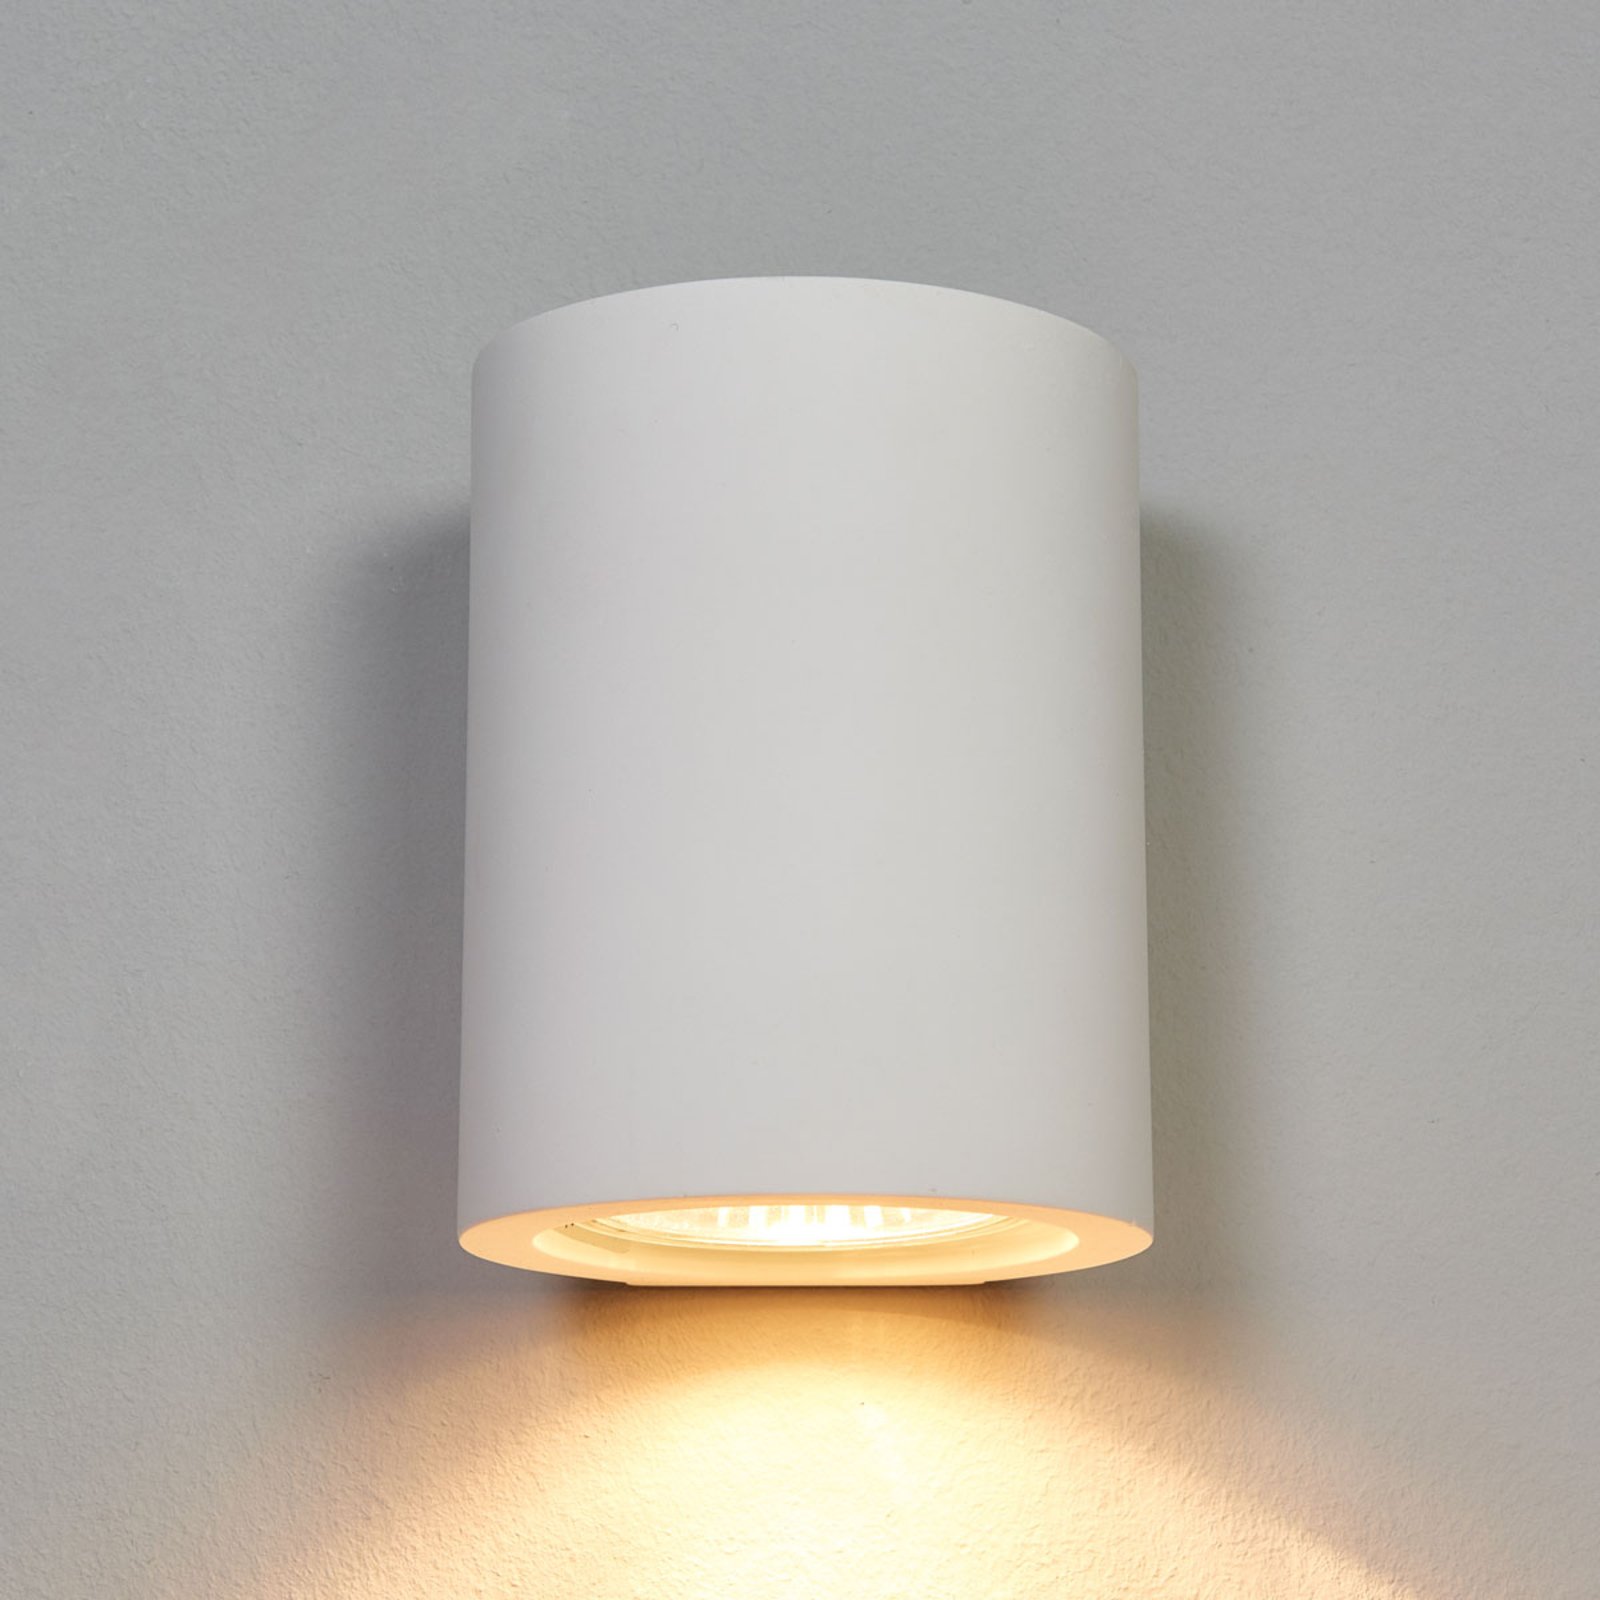 Miroslaw fehér GU10 fali lámpa gipszből